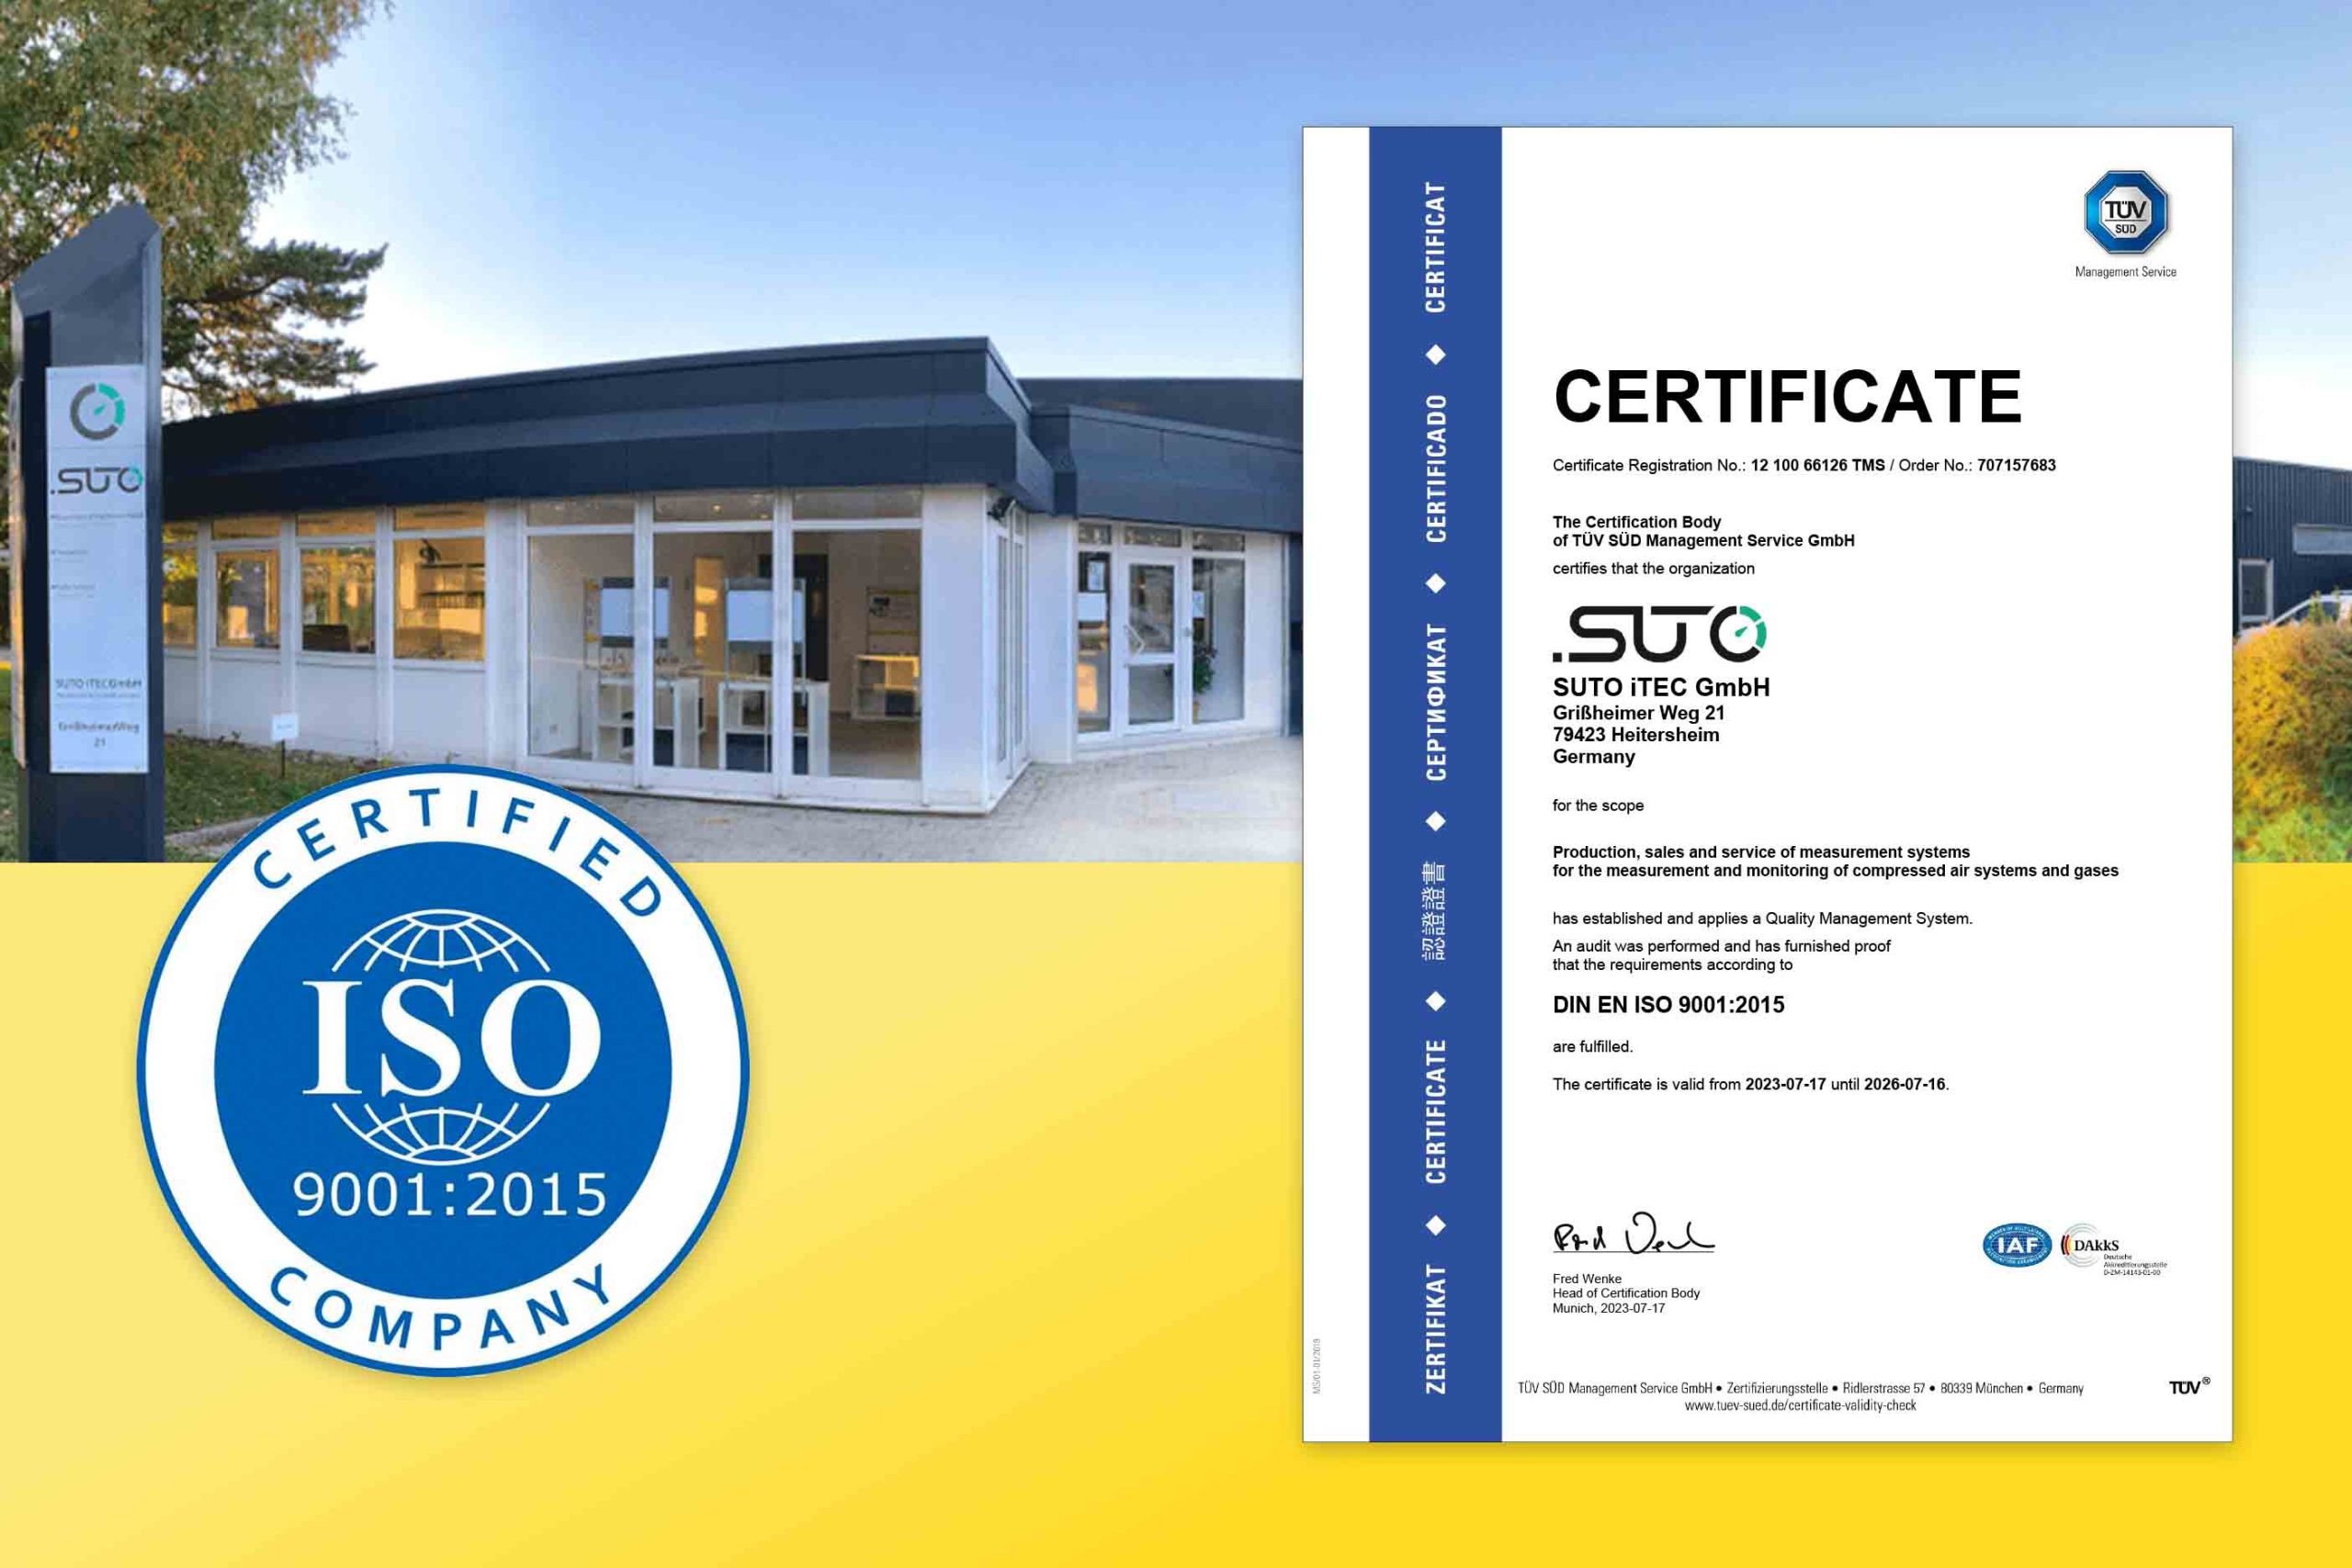 La sede central de SUTO iTEC en Alemania obtiene la certificación ISO 9001:2015